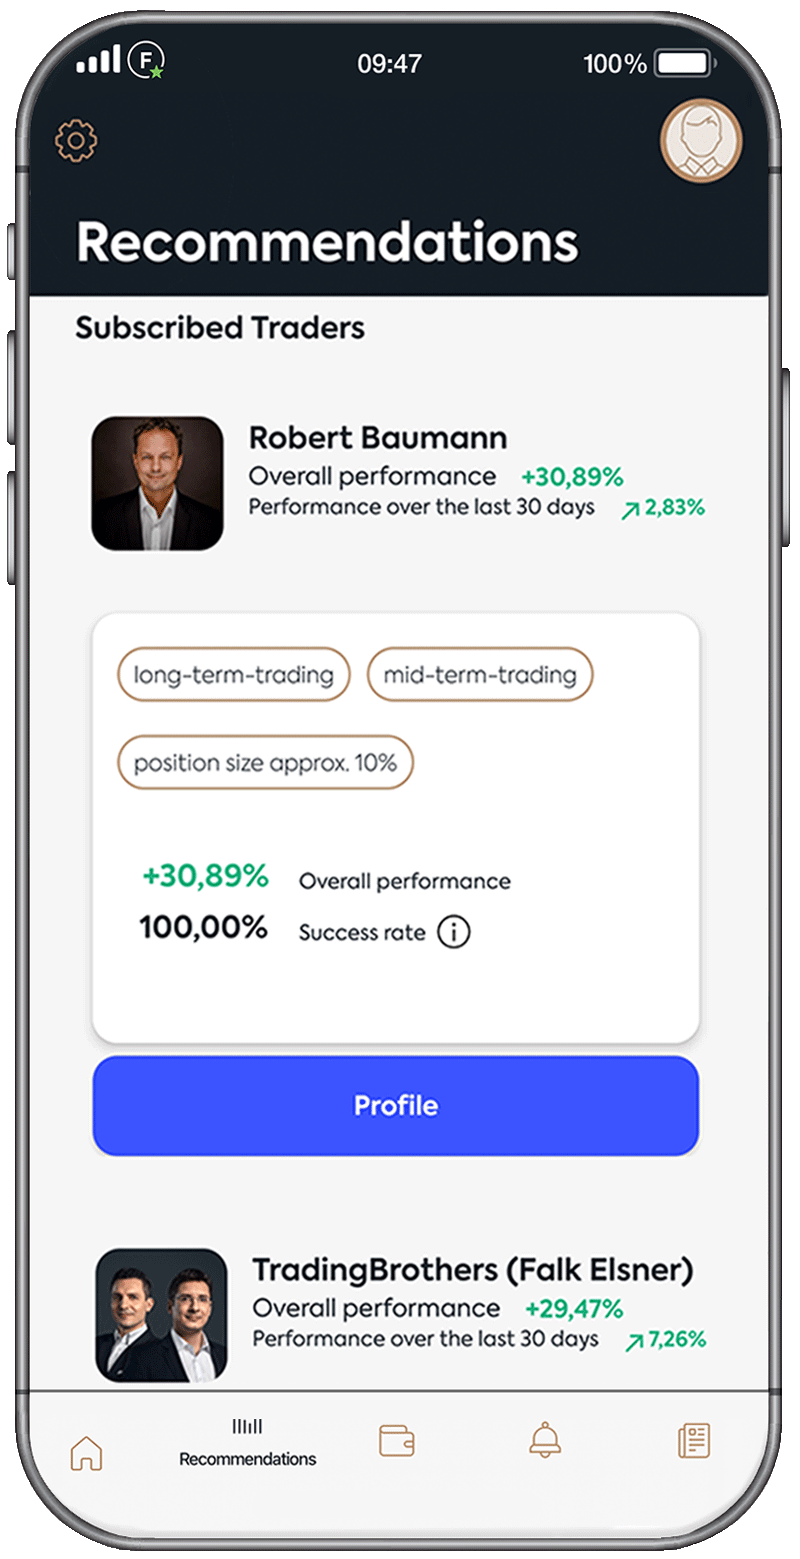 Broker App, profile of Robert Baumann, star trader at Follow MyMoney